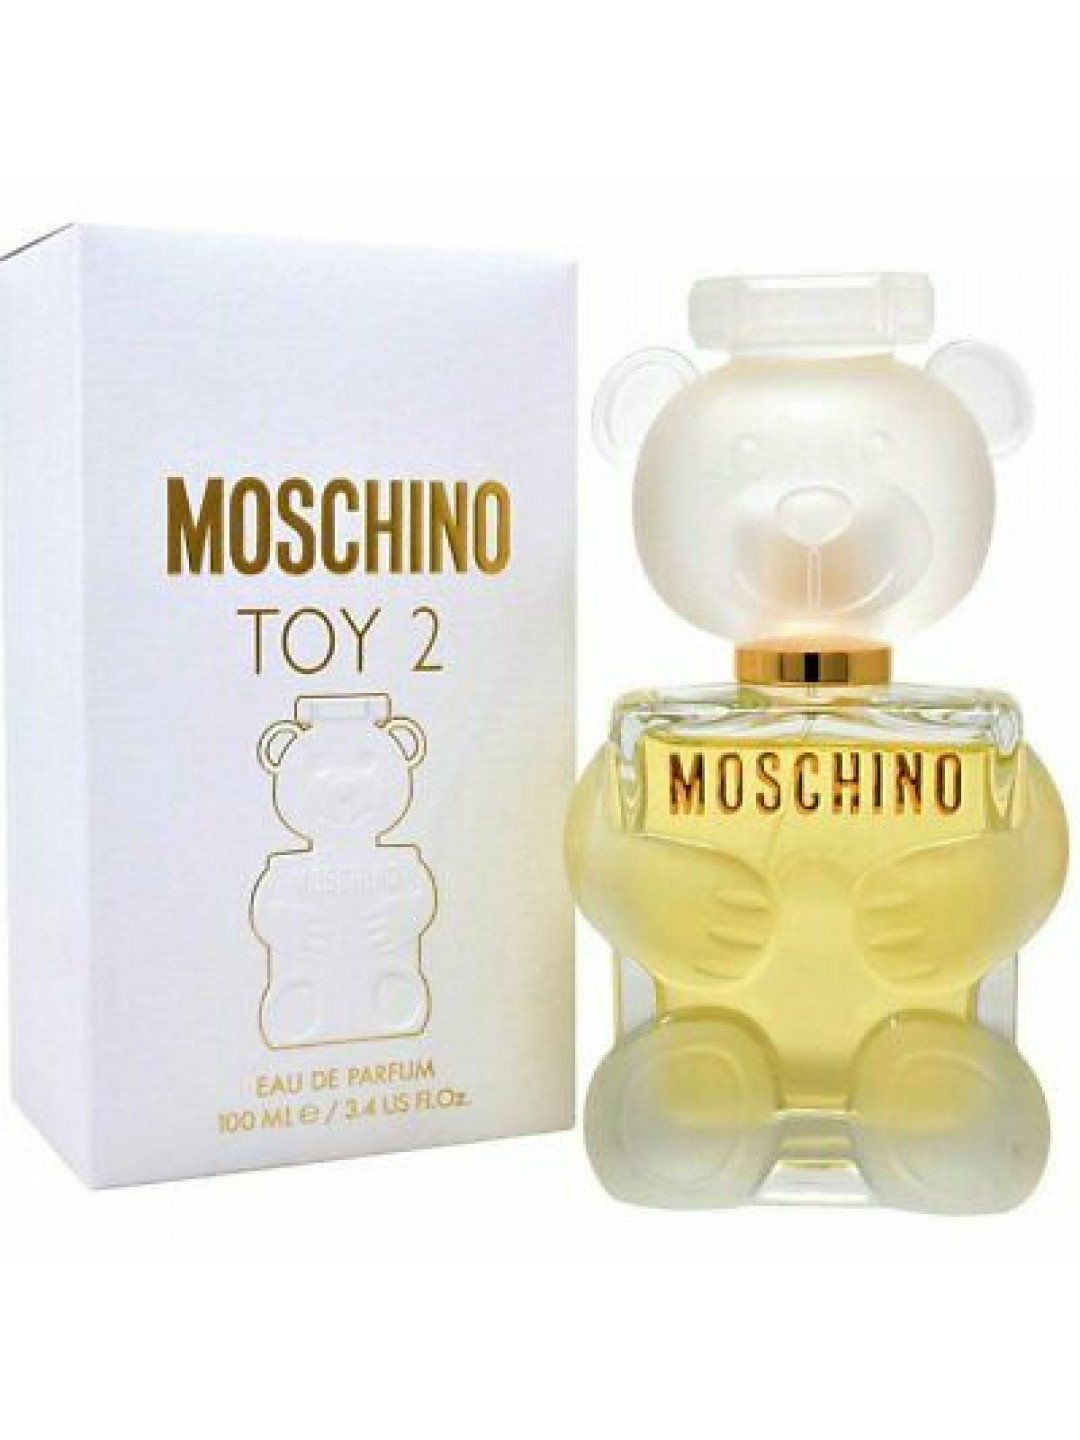 Moschino Toy 2 – EDP 100 ml